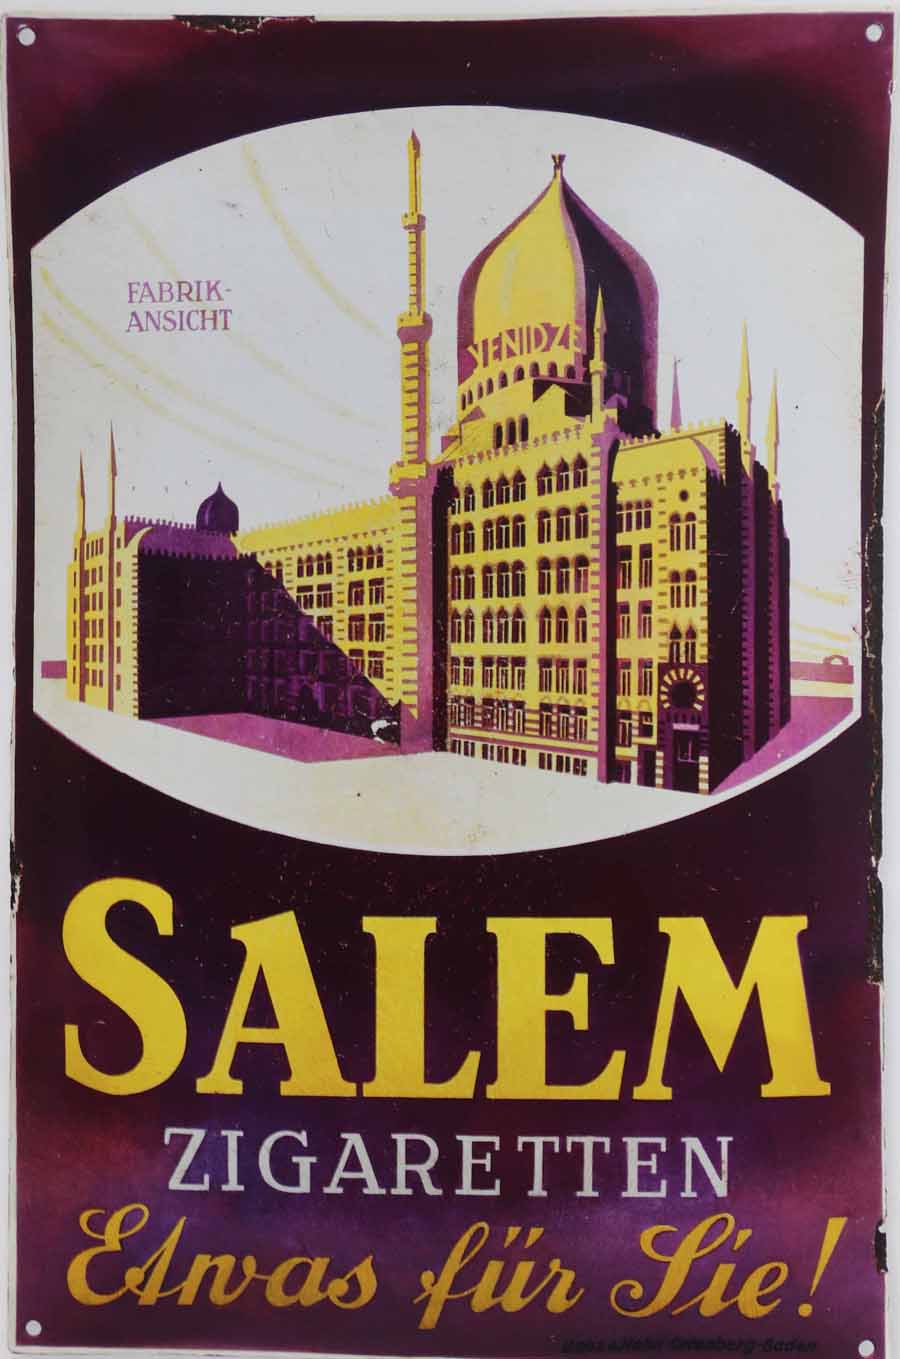 Diese stilisierte Blechversion der Zigarettenfabrik Yenidze warb für die Salem-Zigaretten aus Dresden. Die Moschee-Assoziation war beabsichtigt, aber war eben eine europäische Interpretation eines Orient-Motivs. Repro aus: "Reklame. Verführung in Blech", Sandsteinverlag